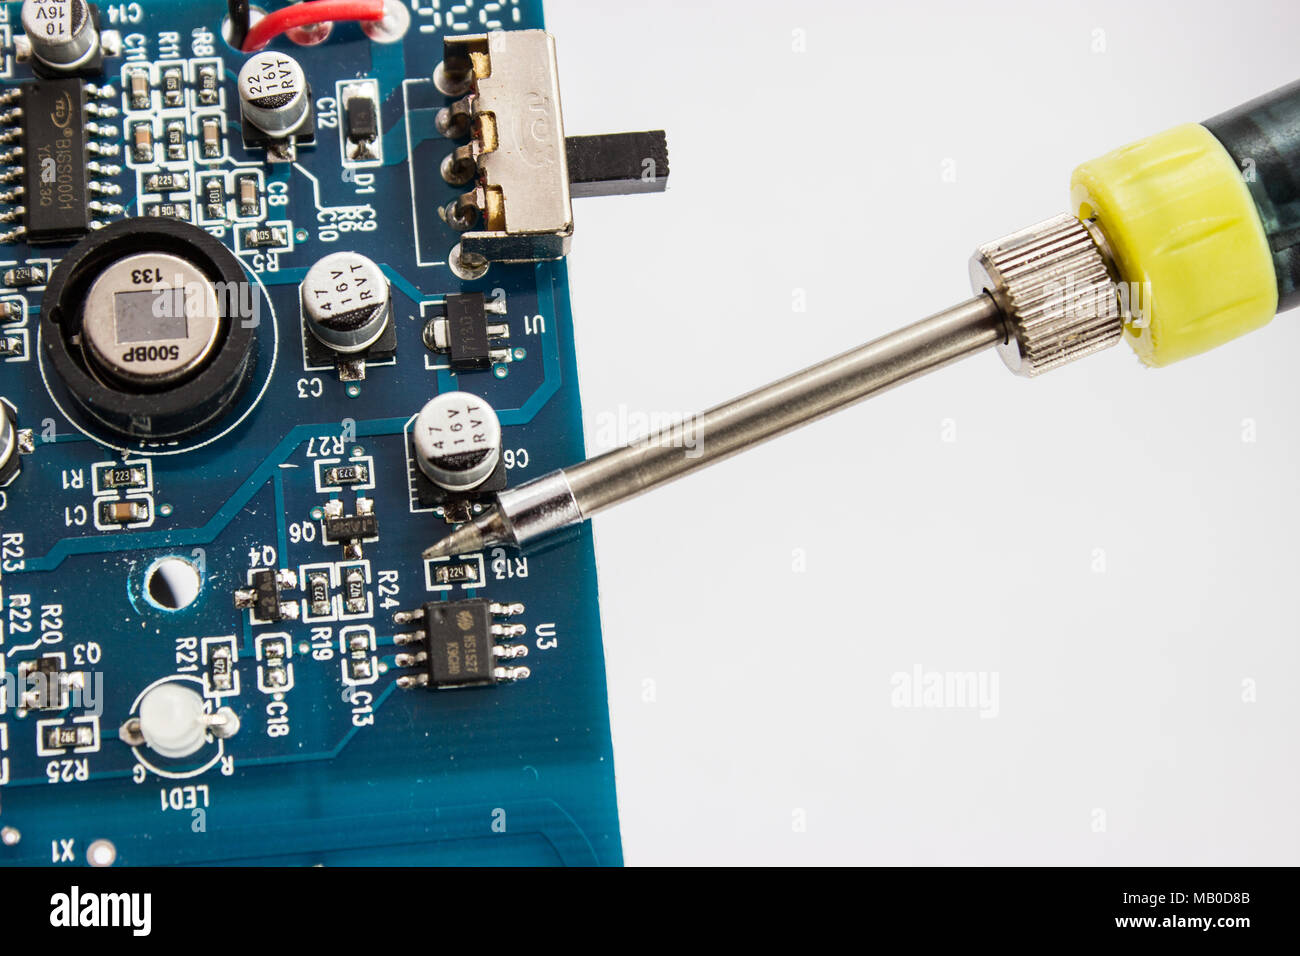 La saldatura di stagno di componentzs elettroniche sulla scheda a circuito stampato. Foto Stock